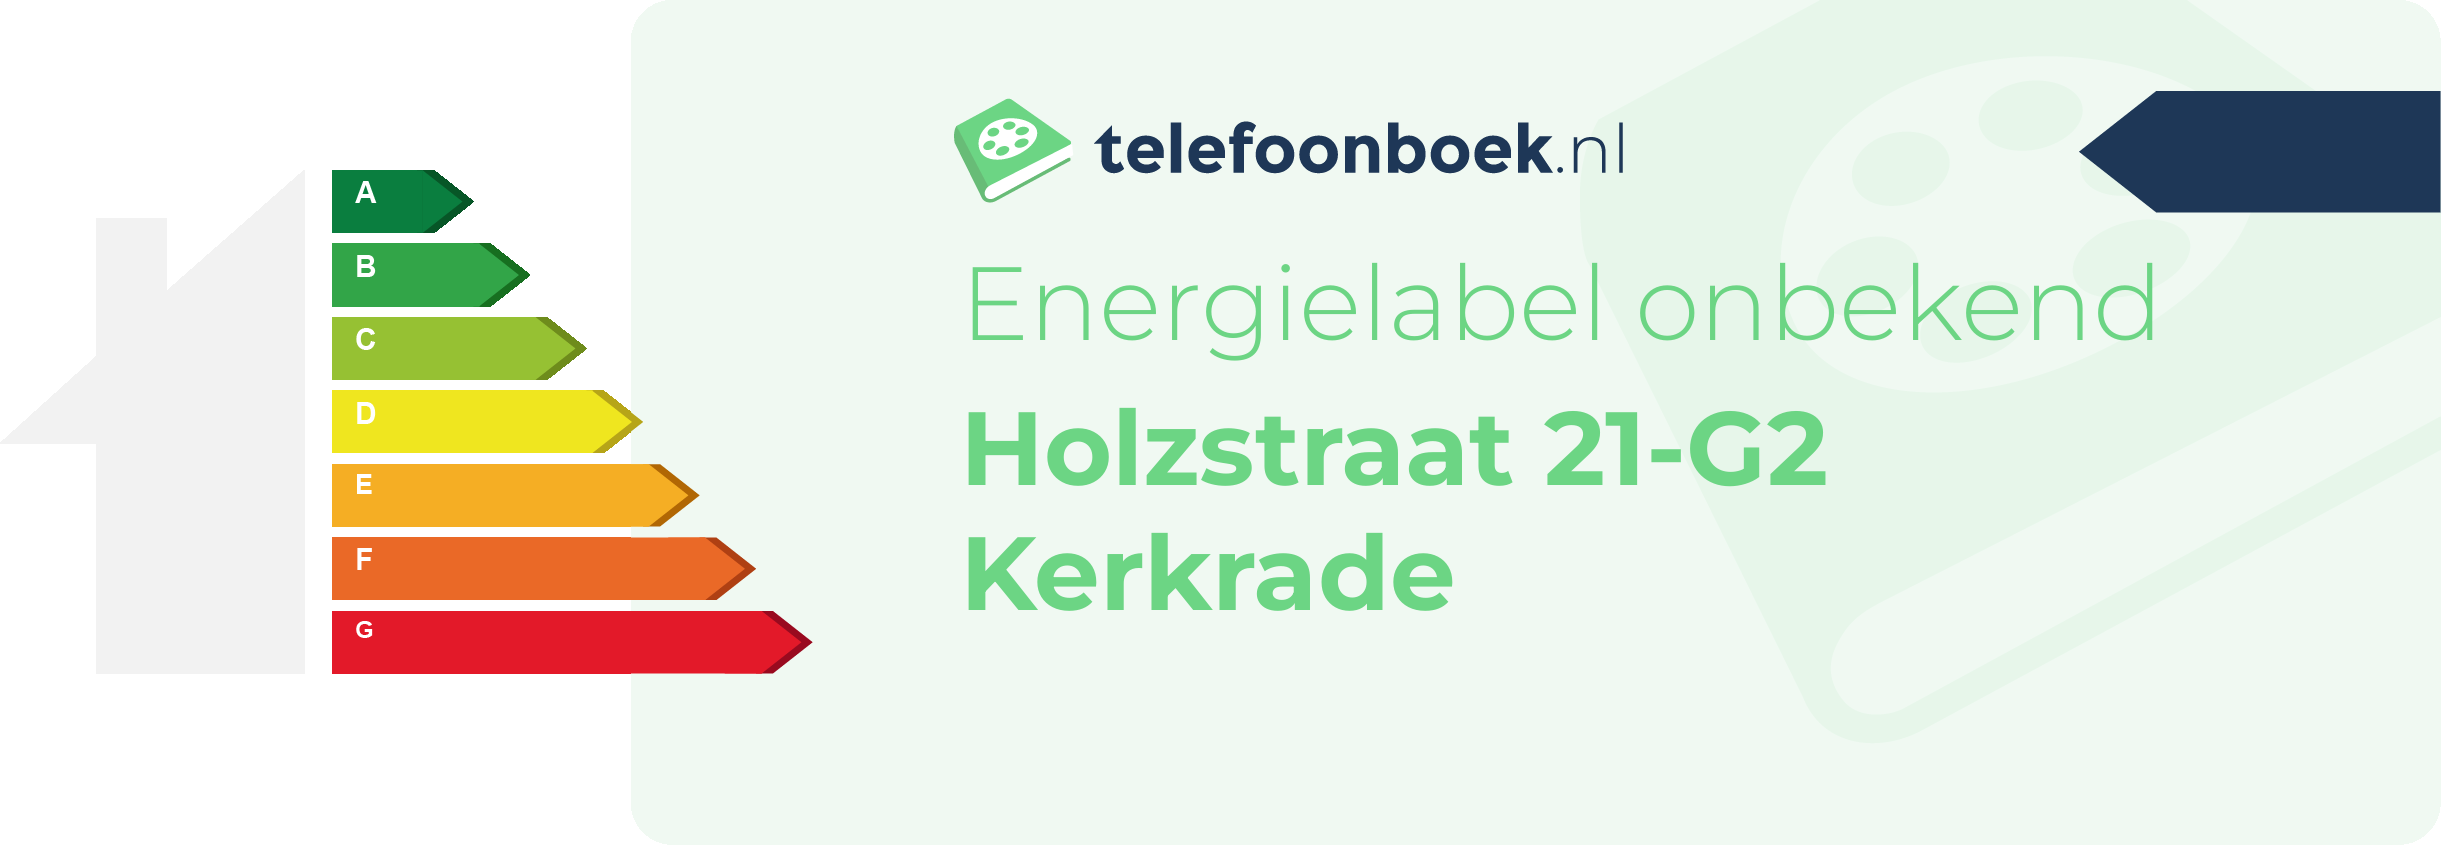 Energielabel Holzstraat 21-G2 Kerkrade